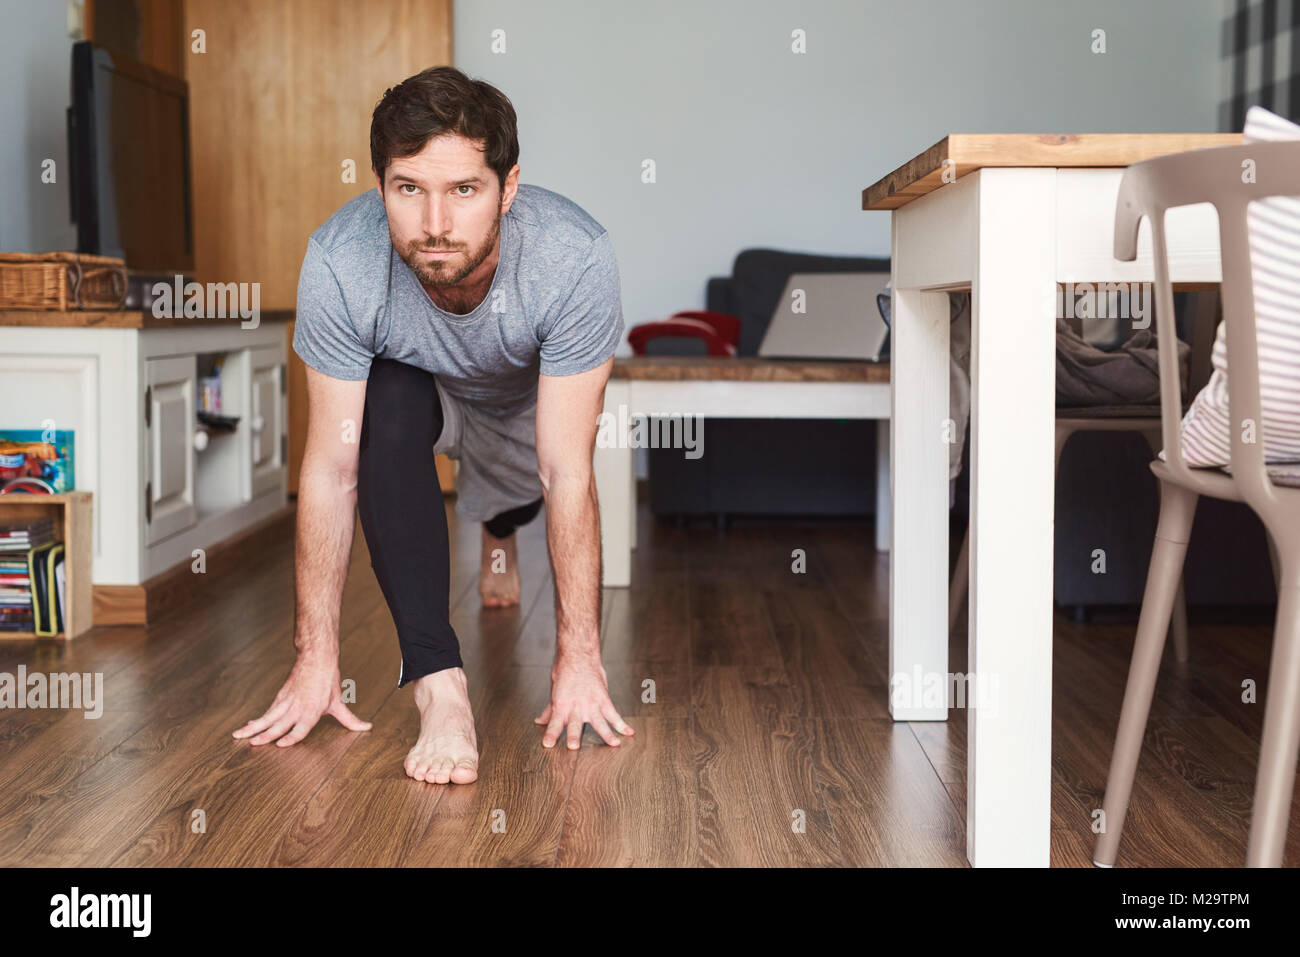 Colocar joven sportswear practicando yoga posturas en el suelo de su apartamento durante una sesión de ejercicio físico Foto de stock